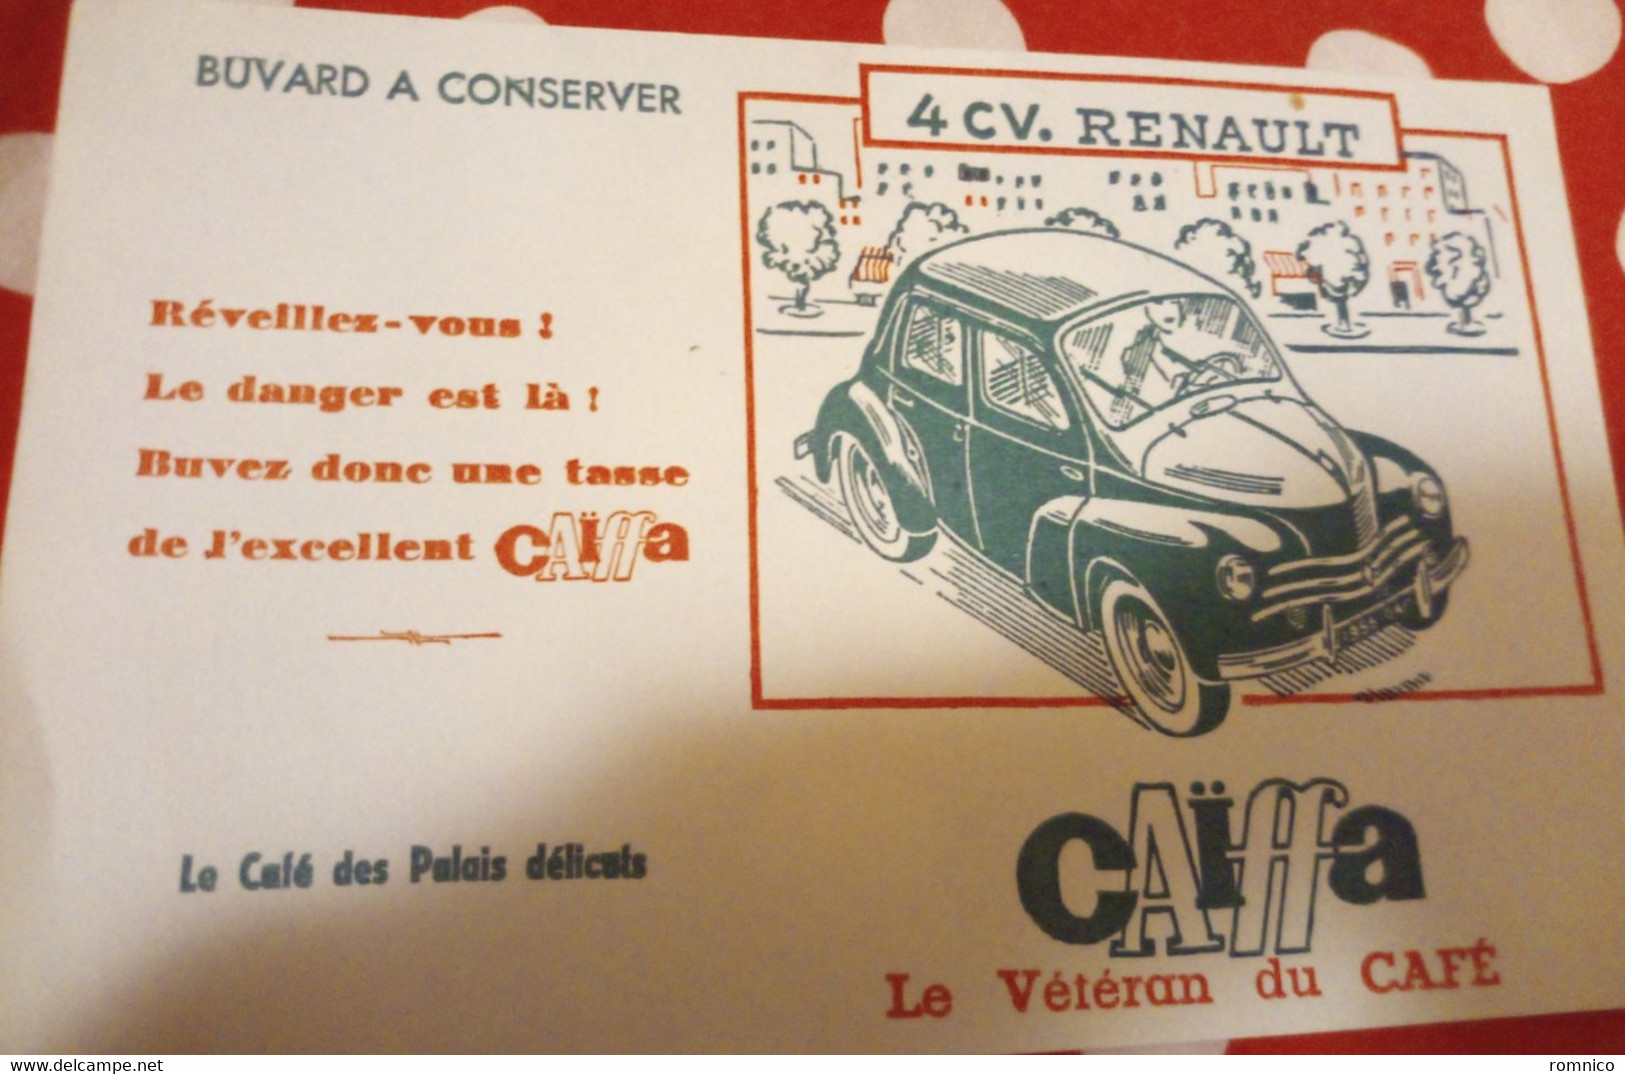 Buvard Caiffa 4Cv Renault - Automobile